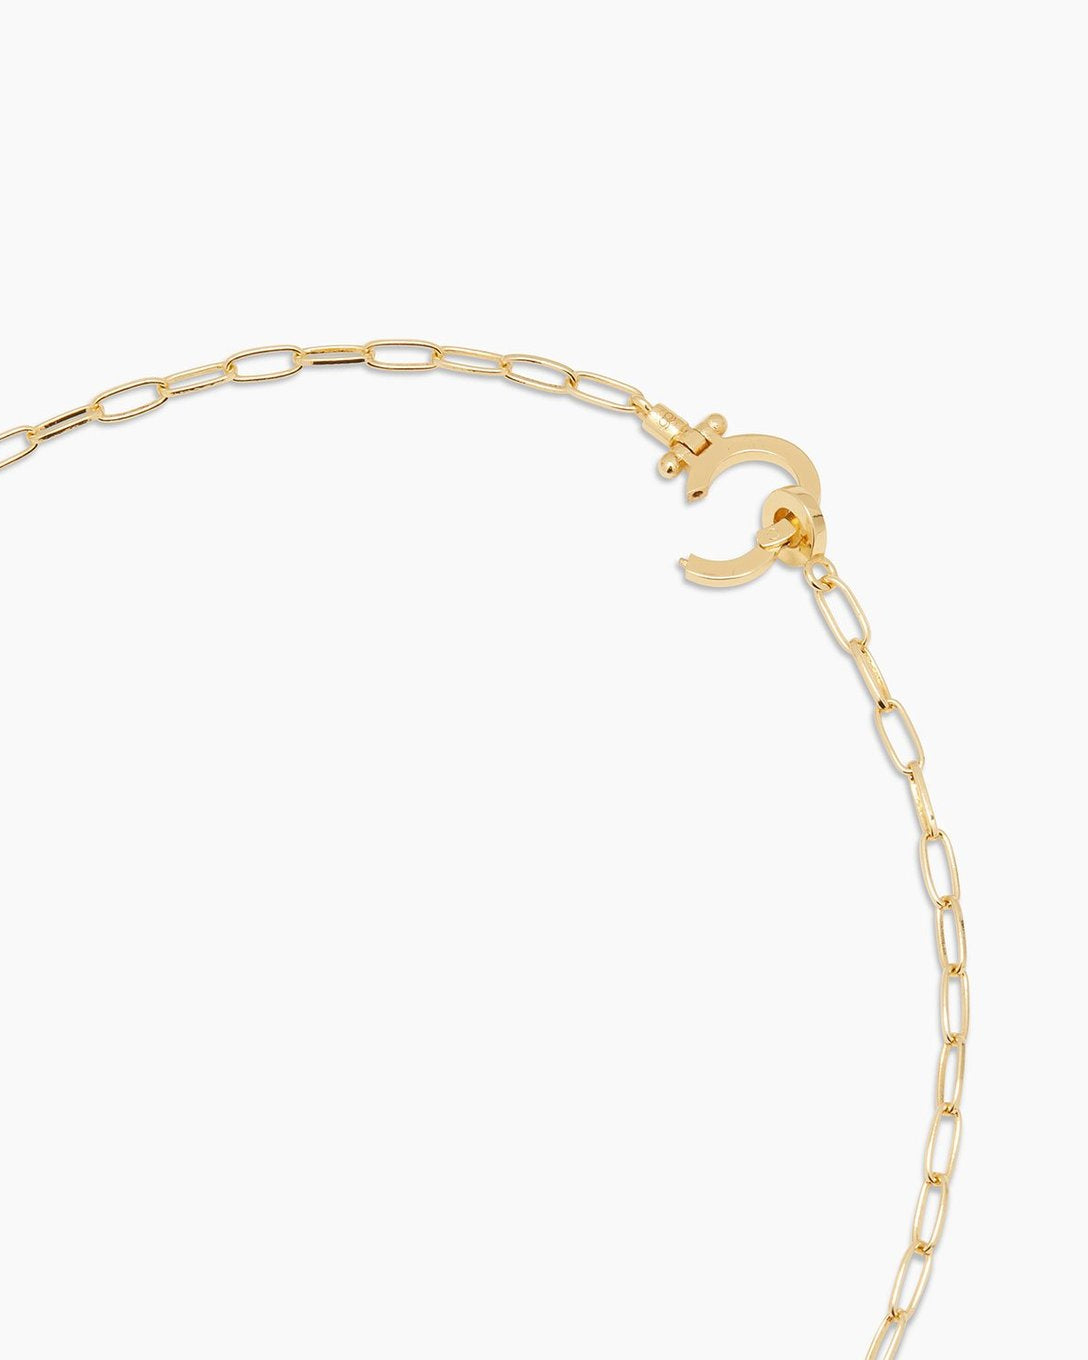 Parker Mini Necklace (gold).